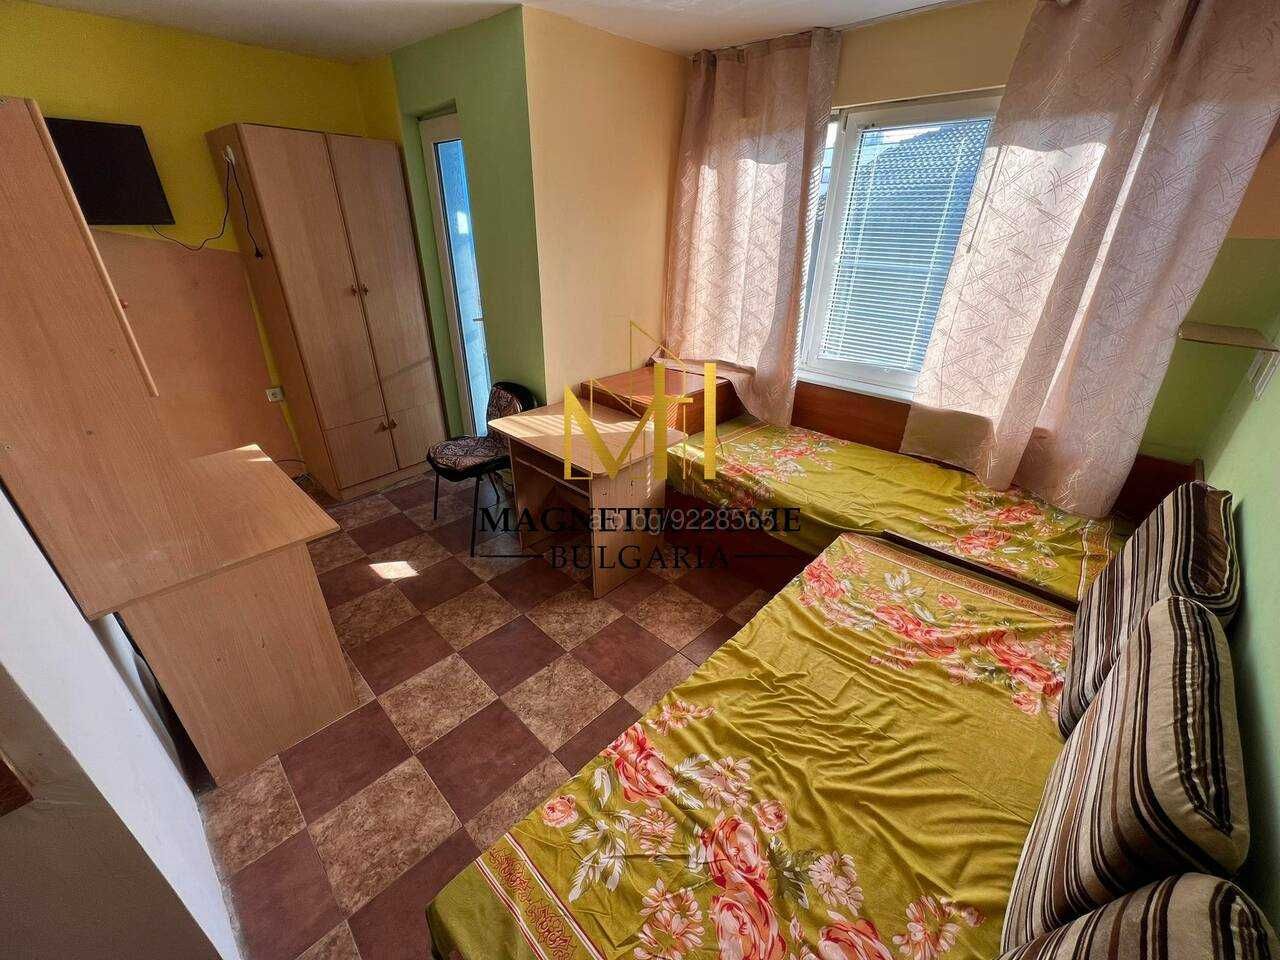 Бюджетен едностаен апартамент до ”Новата поща” в ж.к. Братя Миладинови